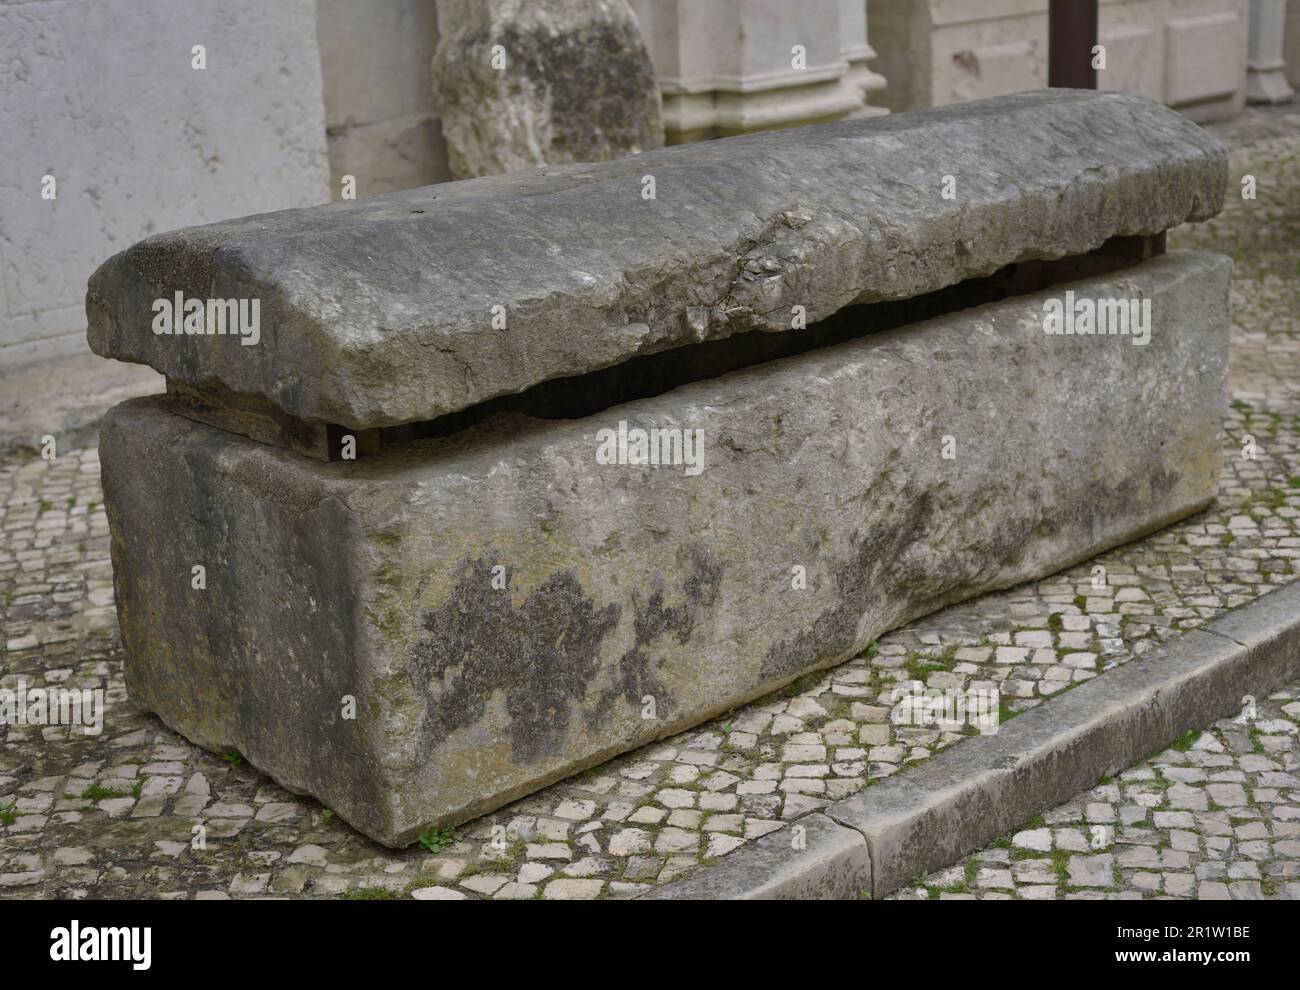 Tomba, secoli 12th-13th. Provenienza sconosciuta. Museo Archeologico di Carmo. Lisbona, Portogallo. Foto Stock